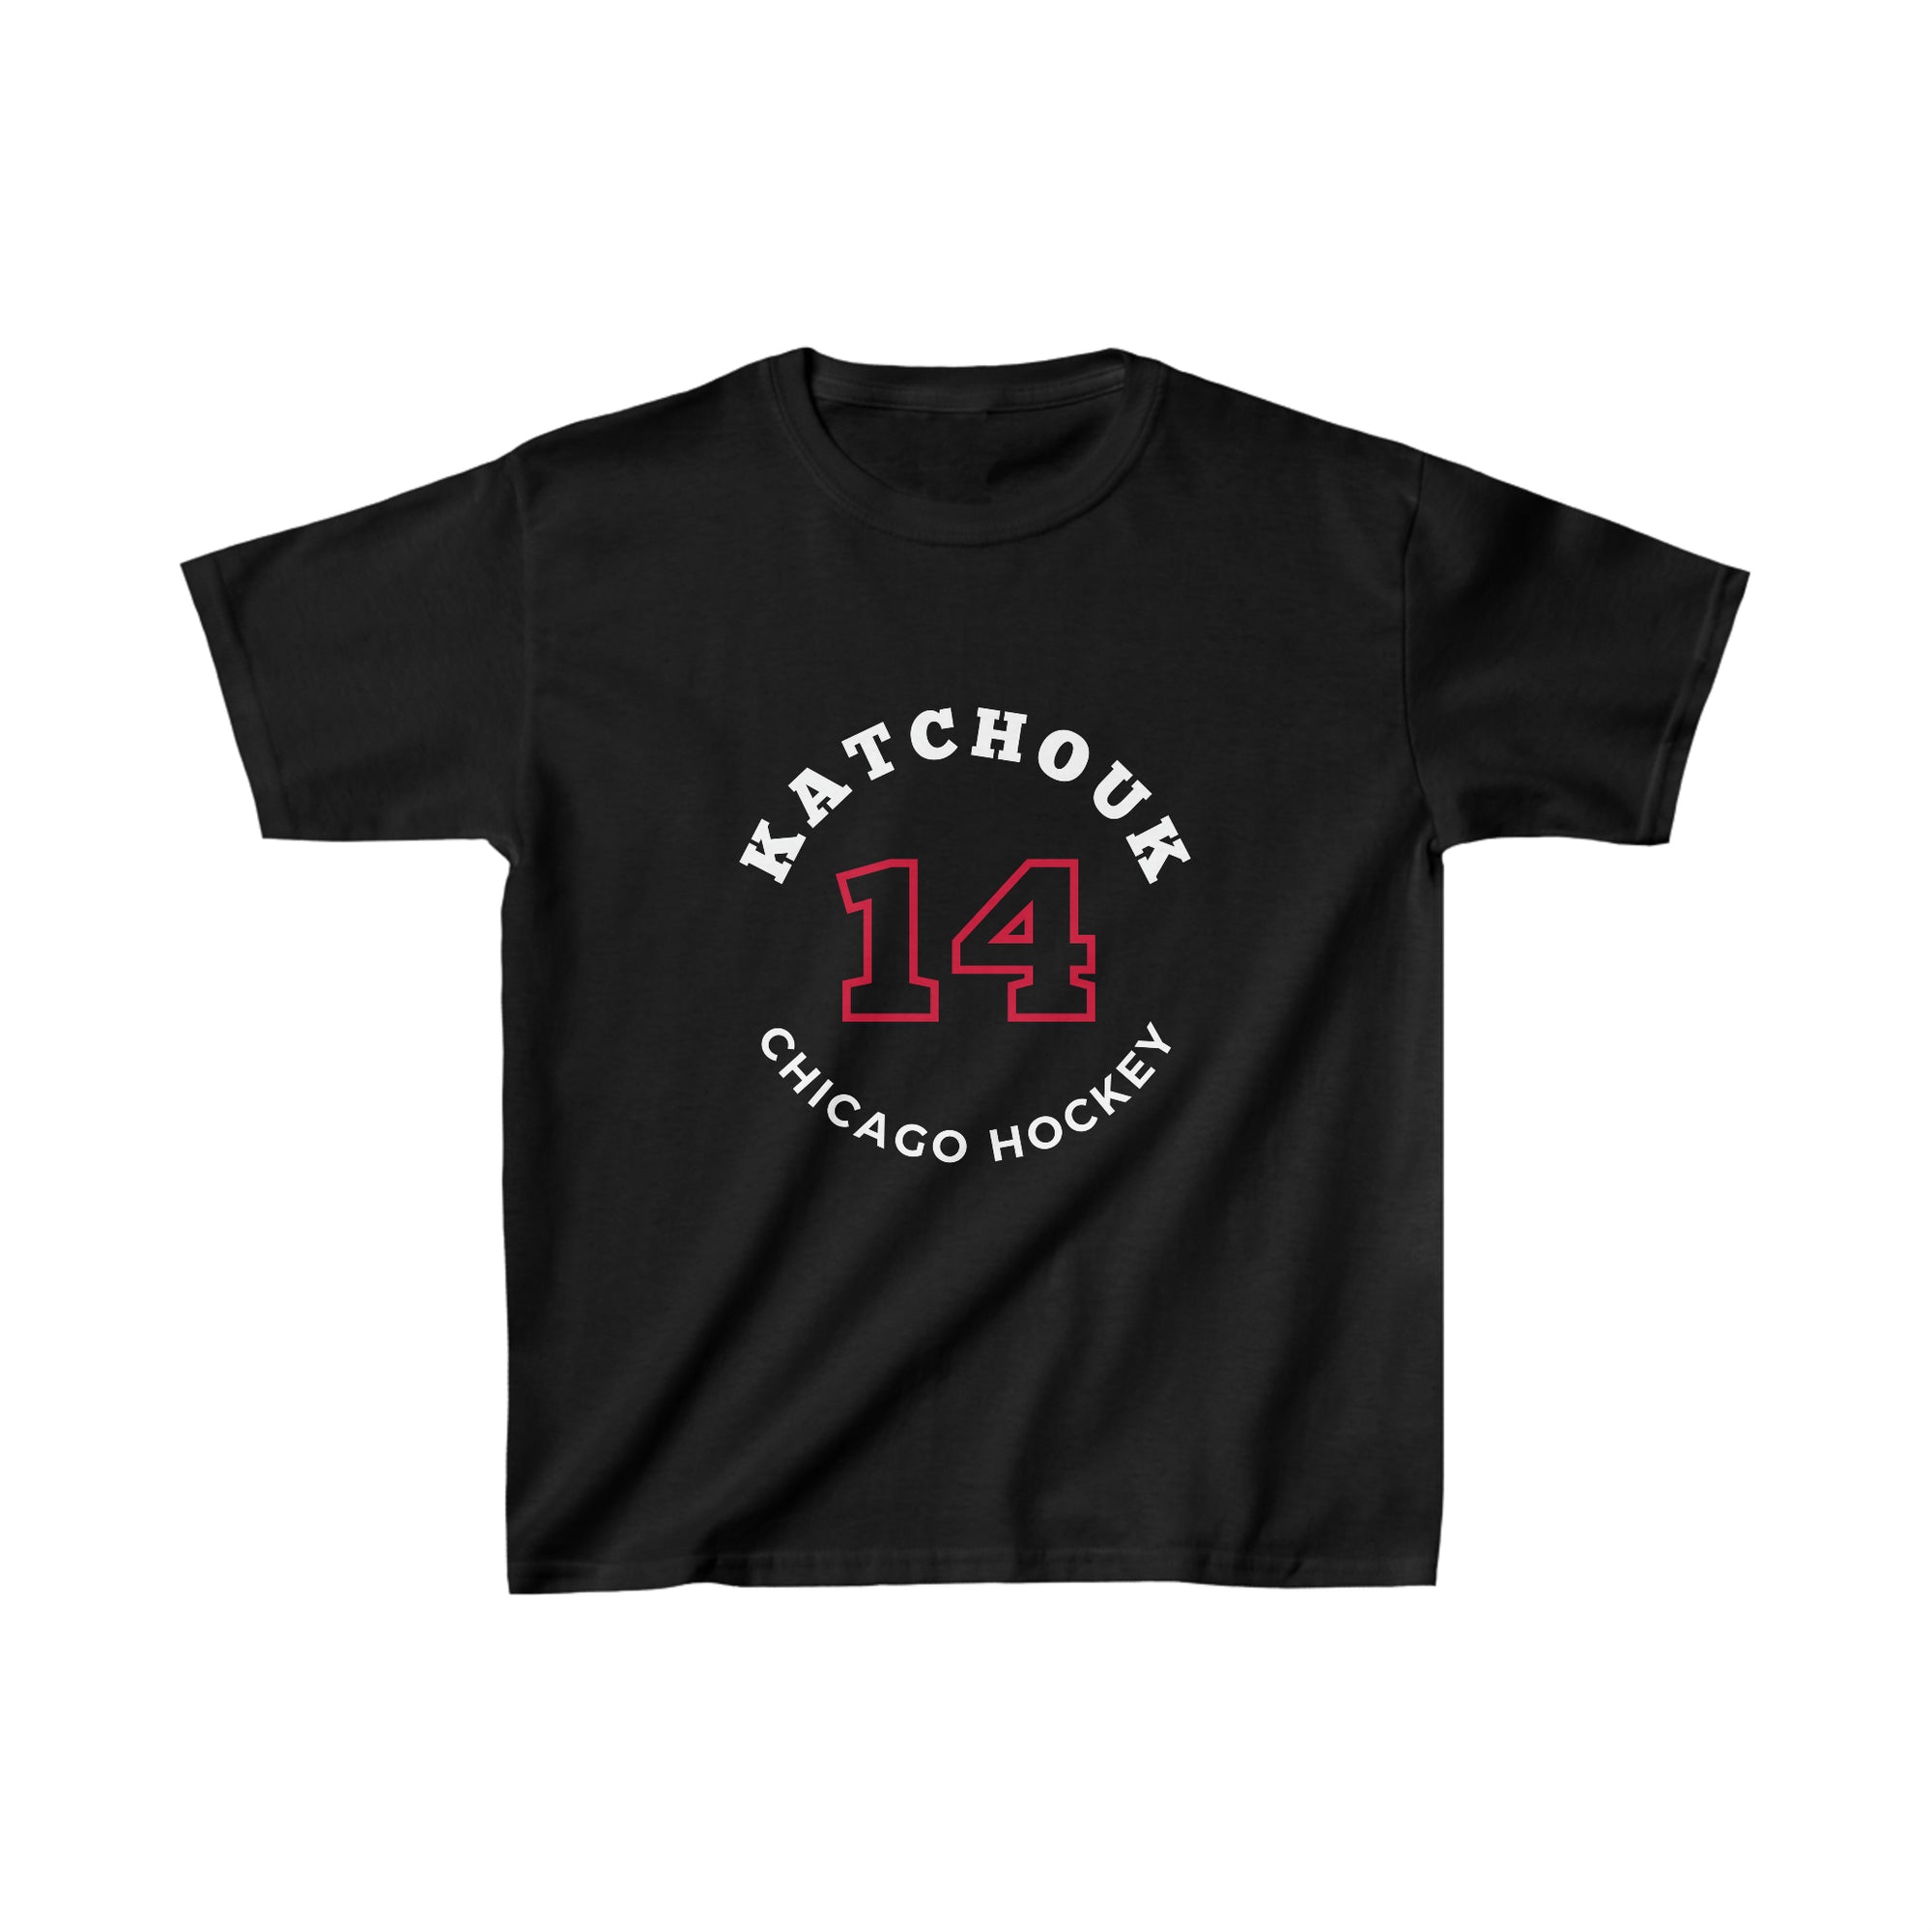 Katchouk 14 Chicago Hockey Number Arch Design Kids Tee